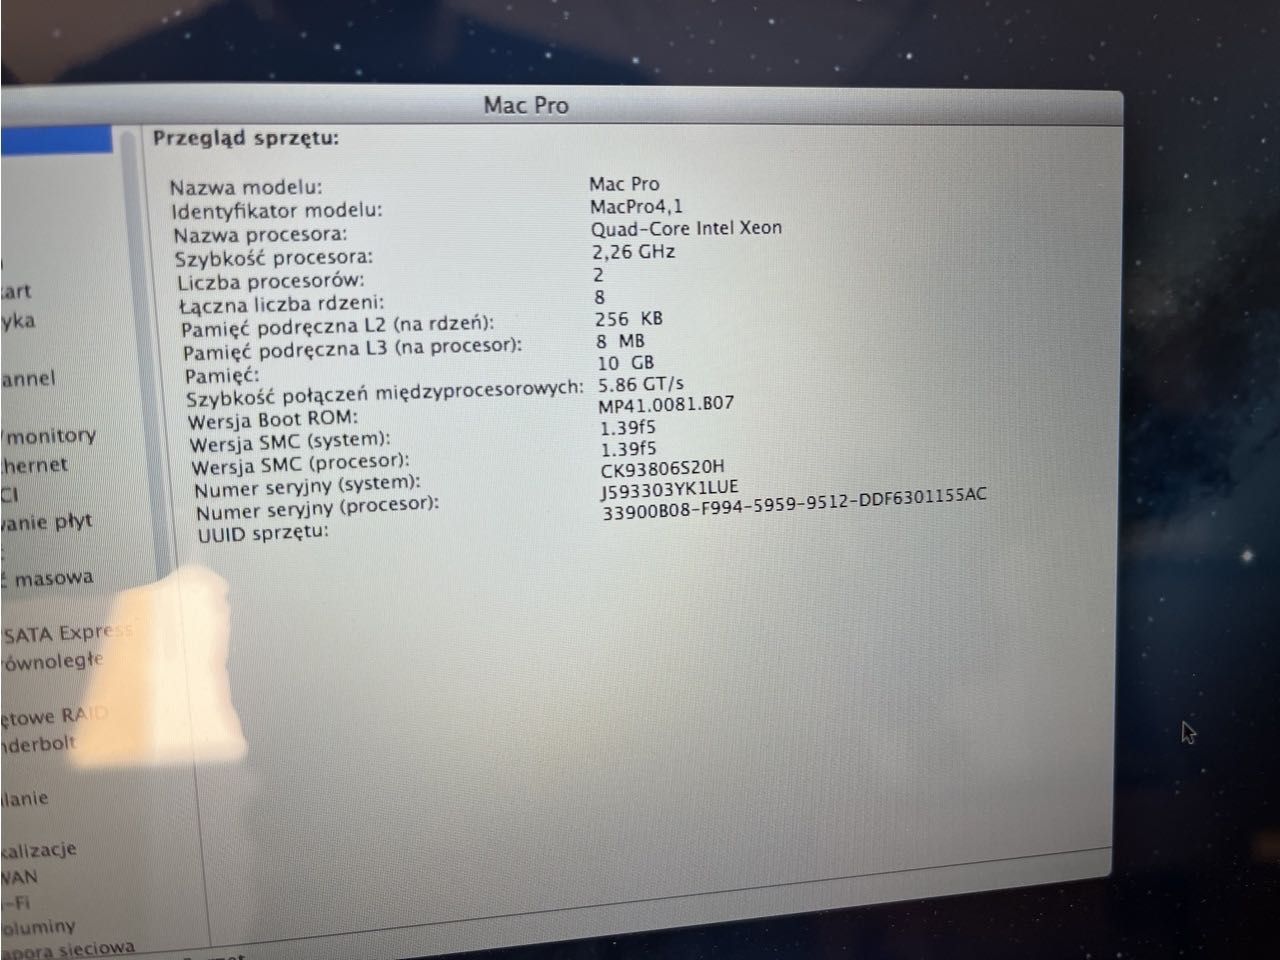 Mac Pro 4.1 Apple